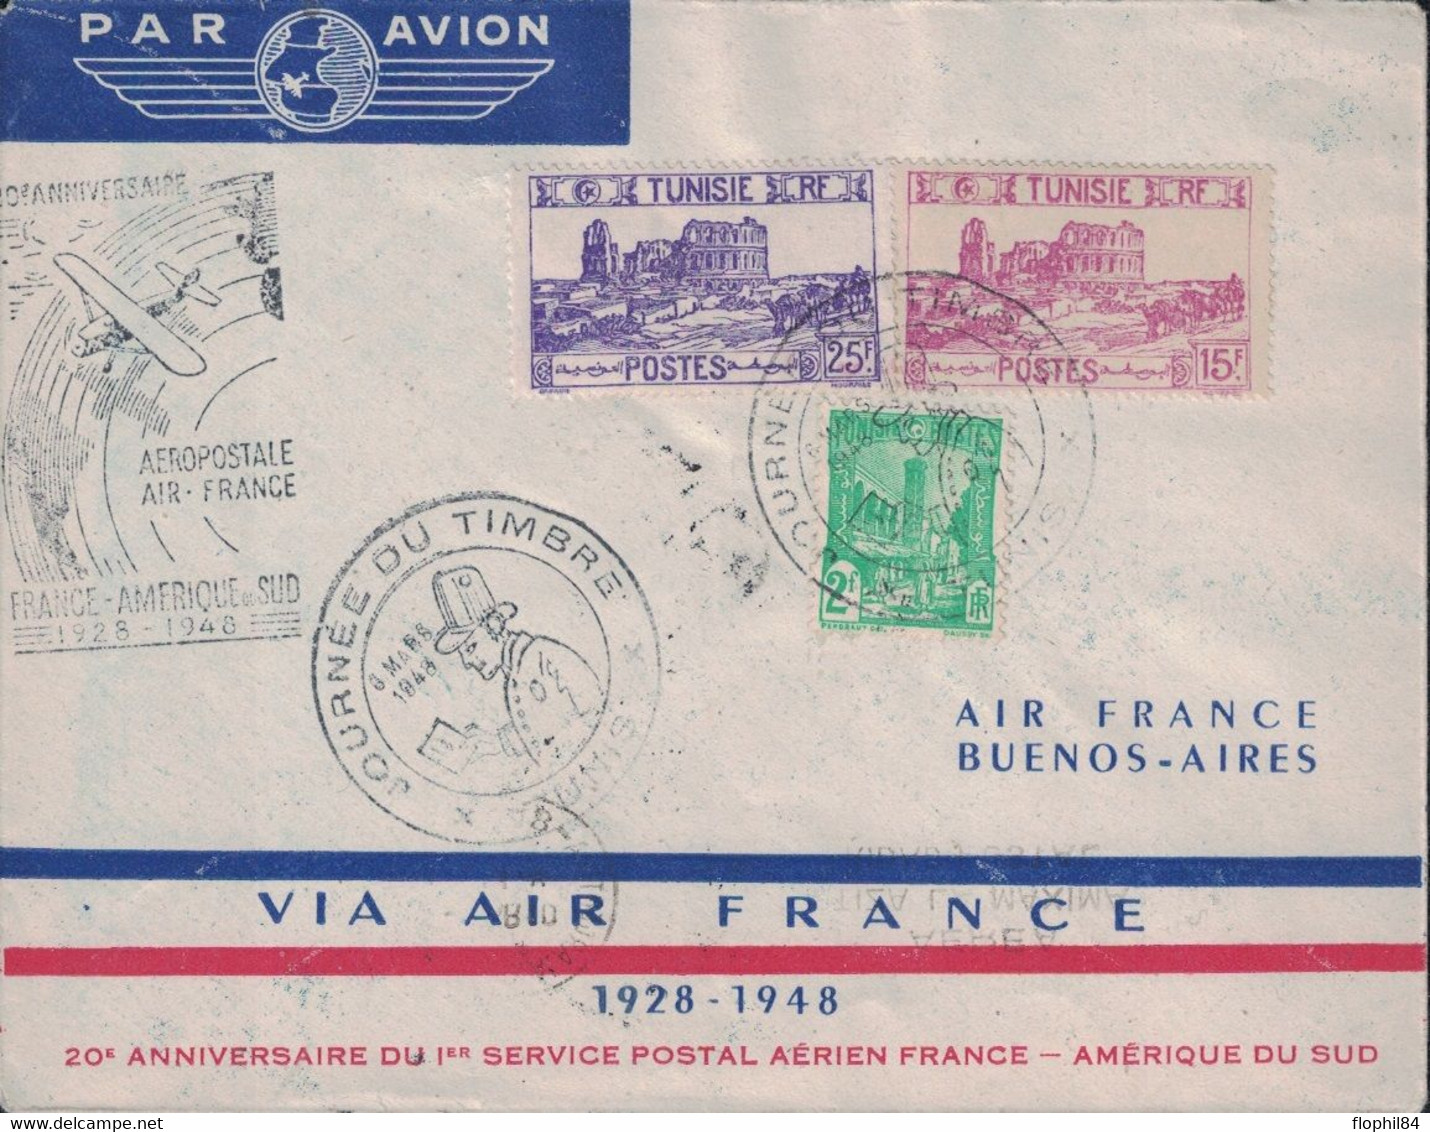 TUNISIE - TUNIS - ENVELOPPE AIR FRANCE - LIAISON FRANCE AMERIQUE DU SUD - 1929 EN 8 JOURS - 1948 EN 30 HEURES - CACHET S - Airmail